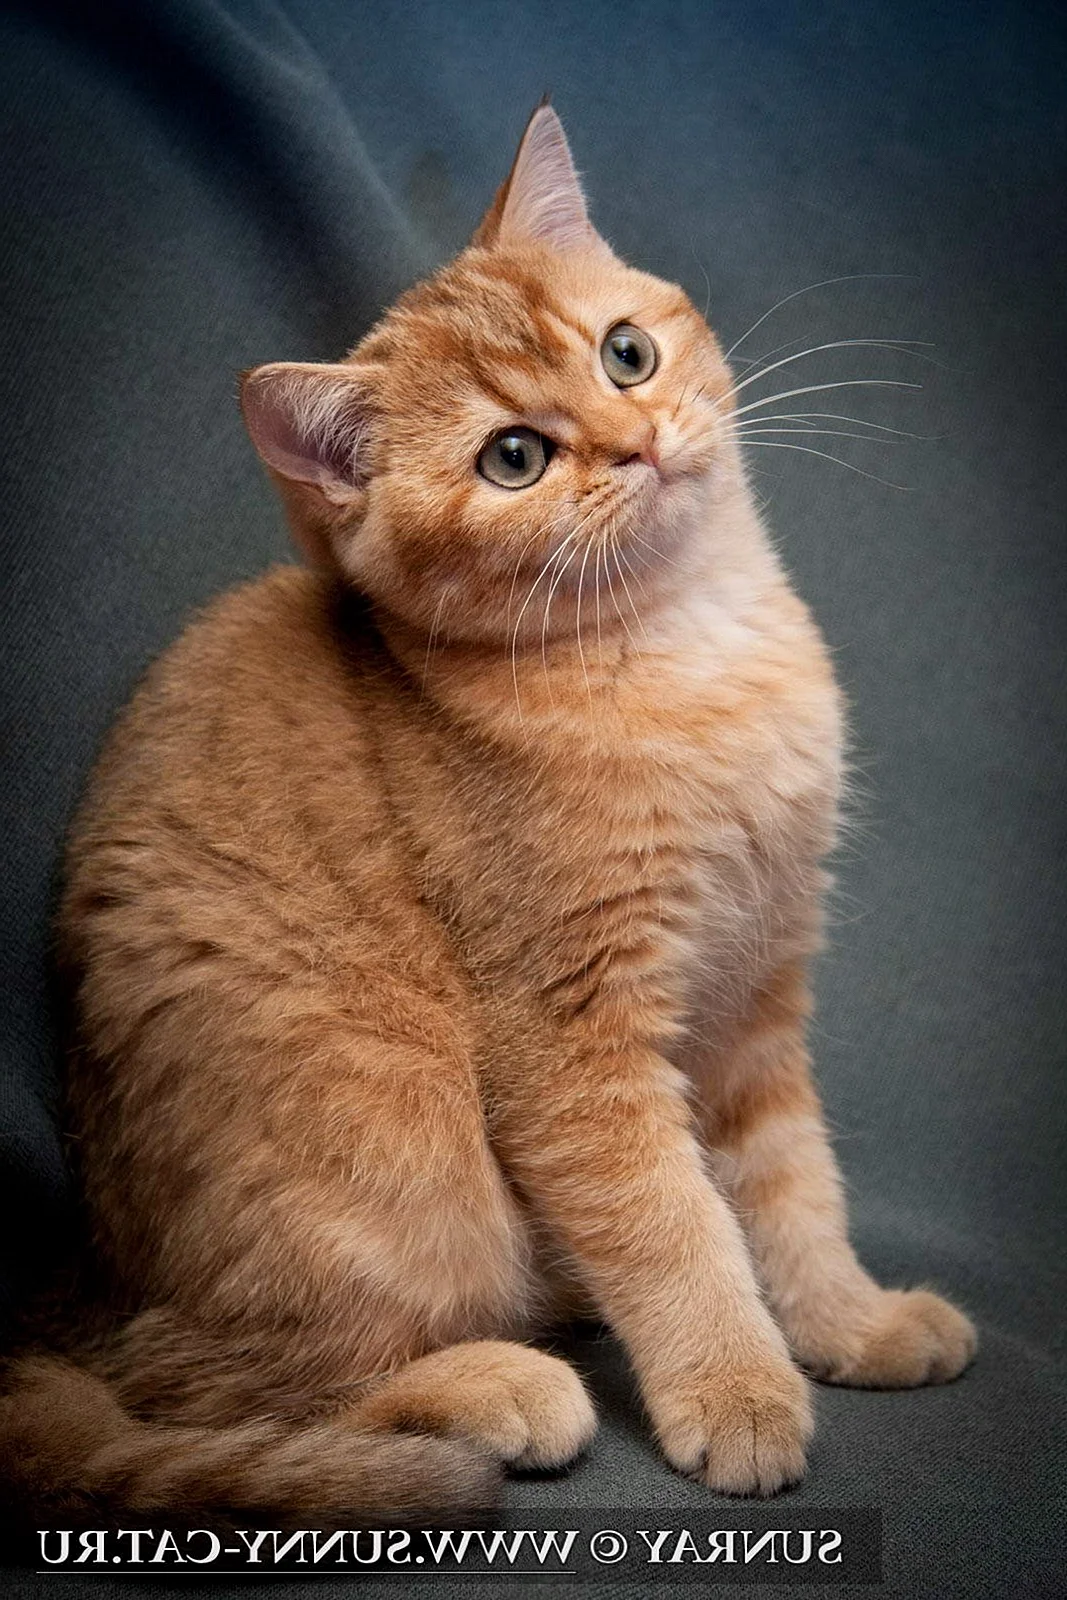 Британская короткошёрстная кошка рыжая